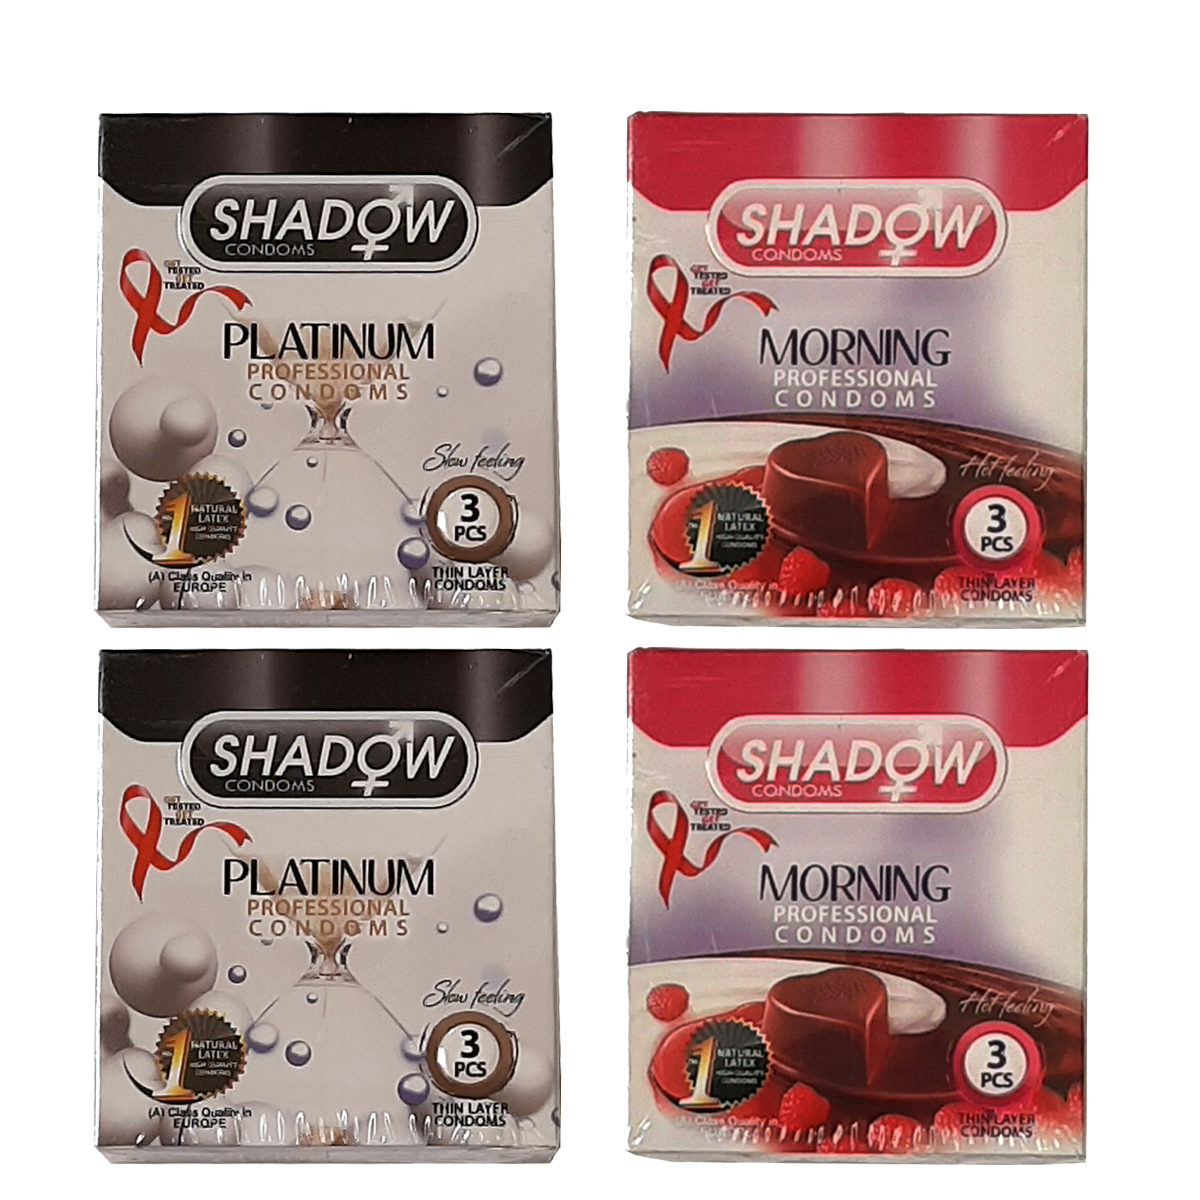 کاندوم شادو مدل platinum مجموعه 2 عددی به همراه کاندوم مدل morning مجموعه 2 عددی